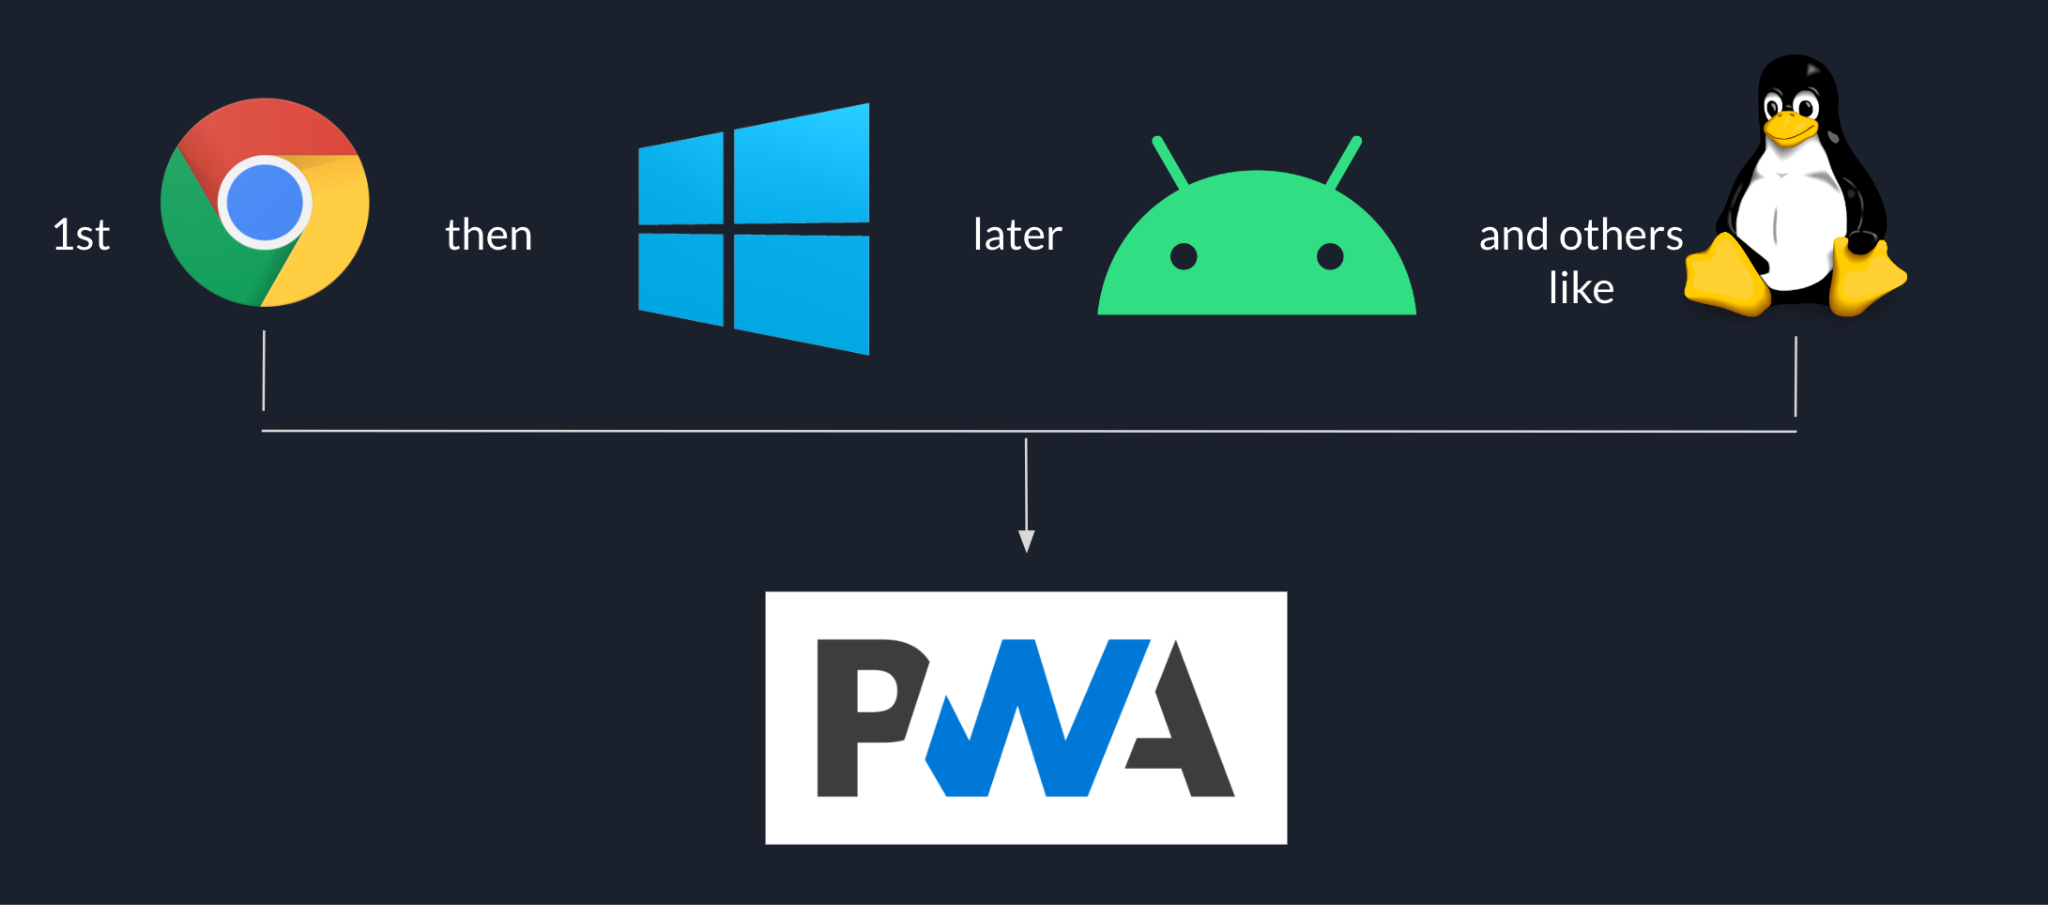 Die Einführung von Goodnotes basiert auf der PWA. Sie beginnt mit Chrome, dann mit Windows, gefolgt von Android und anderen Plattformen wie Linux.